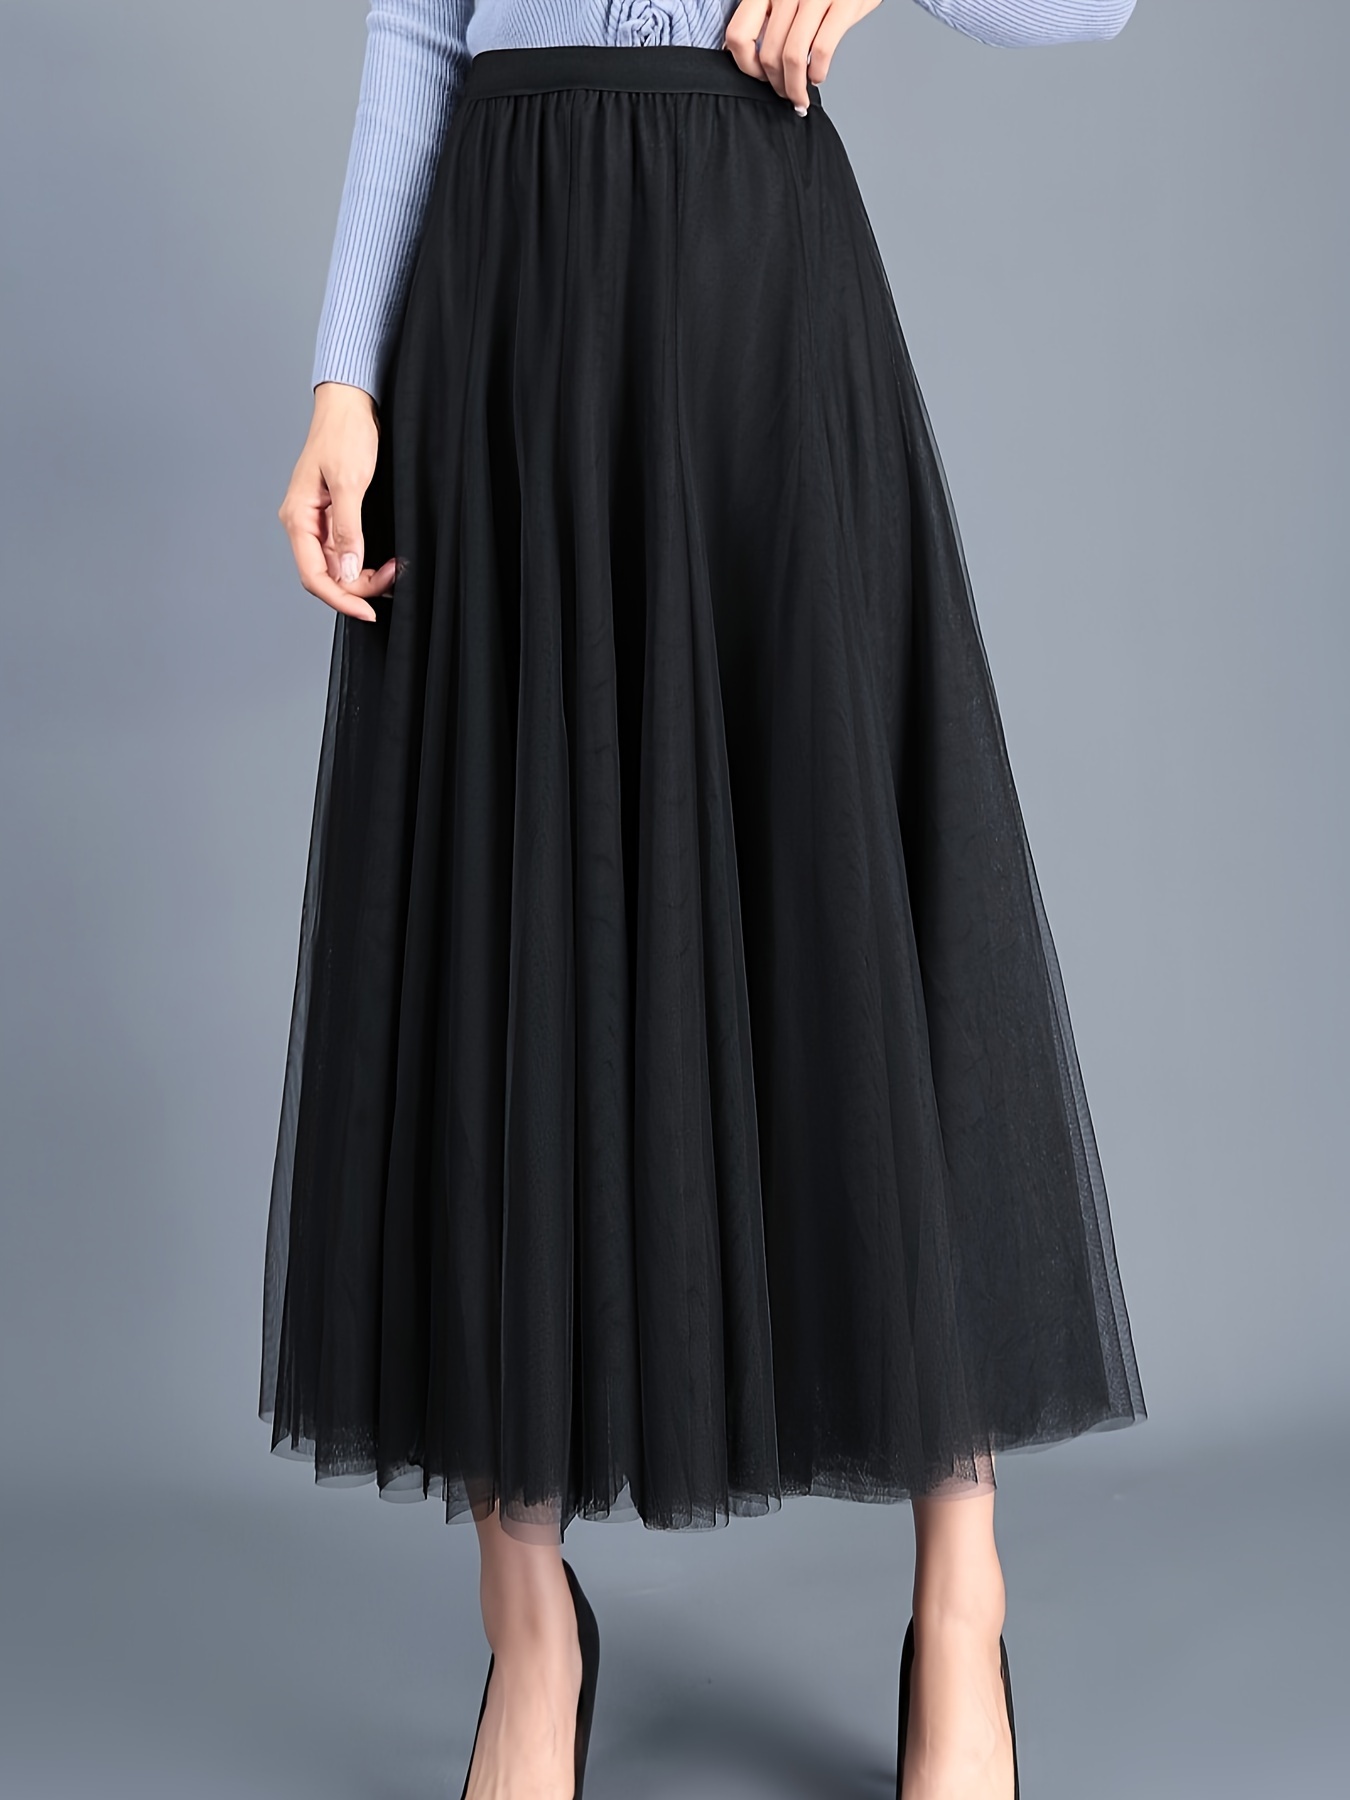 Solid Layered Mesh Skirt Versatile Skirt Spring Fall Women's